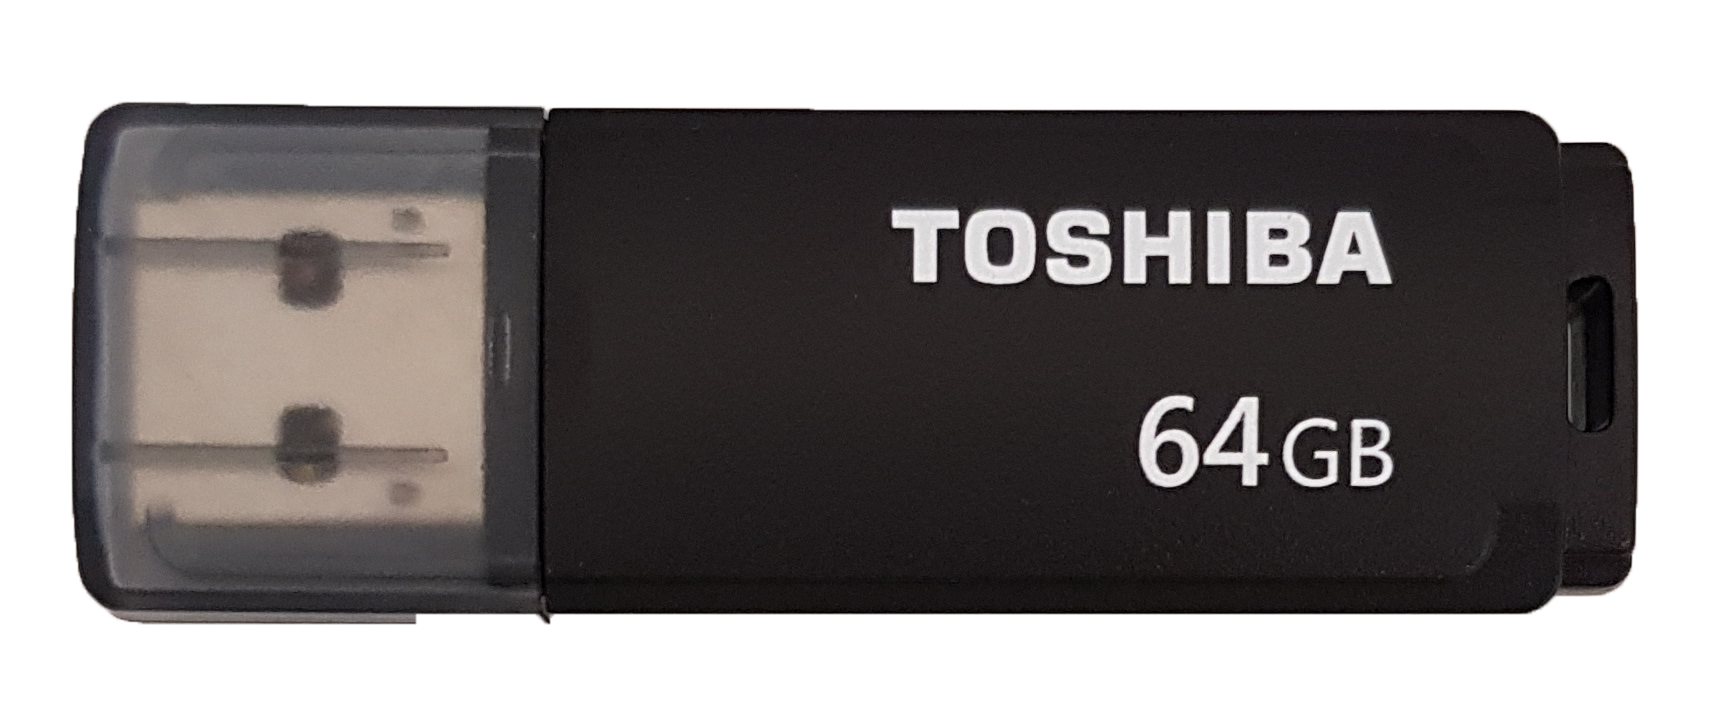 Toshiba SM02 - Stylish and Compact Design